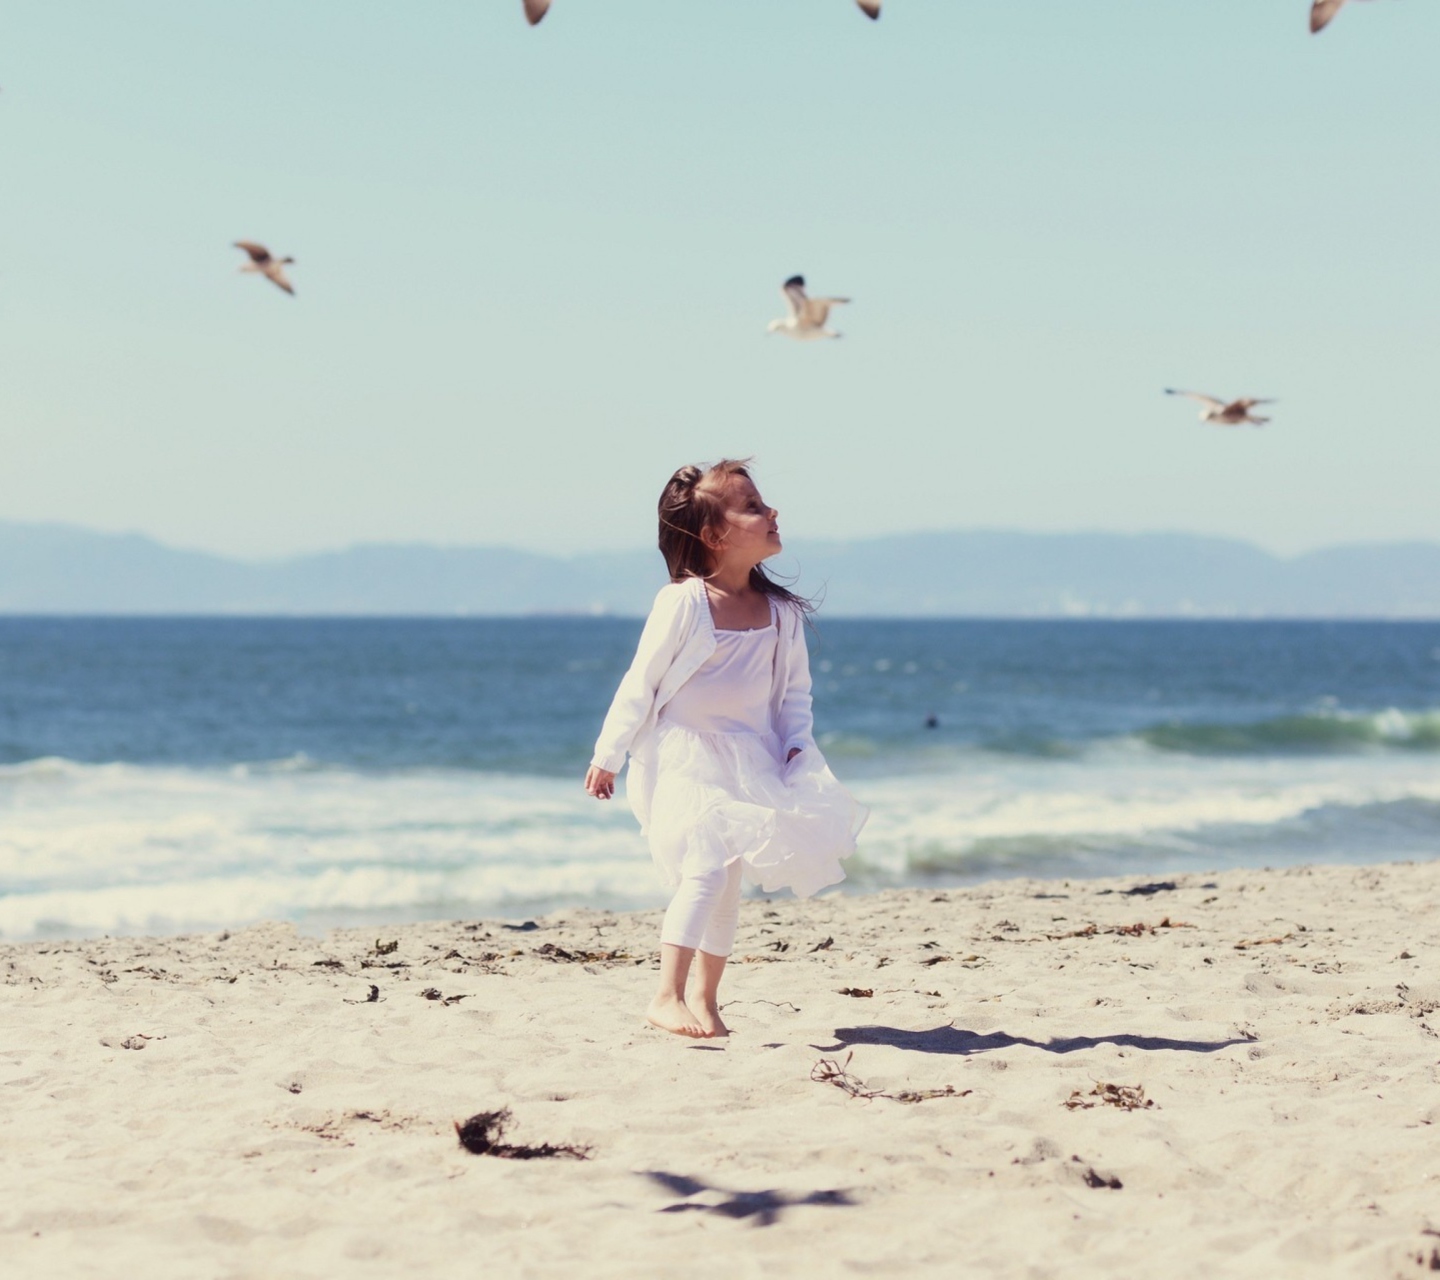 Little Girl At Beach And Seagulls screenshot #1 1440x1280